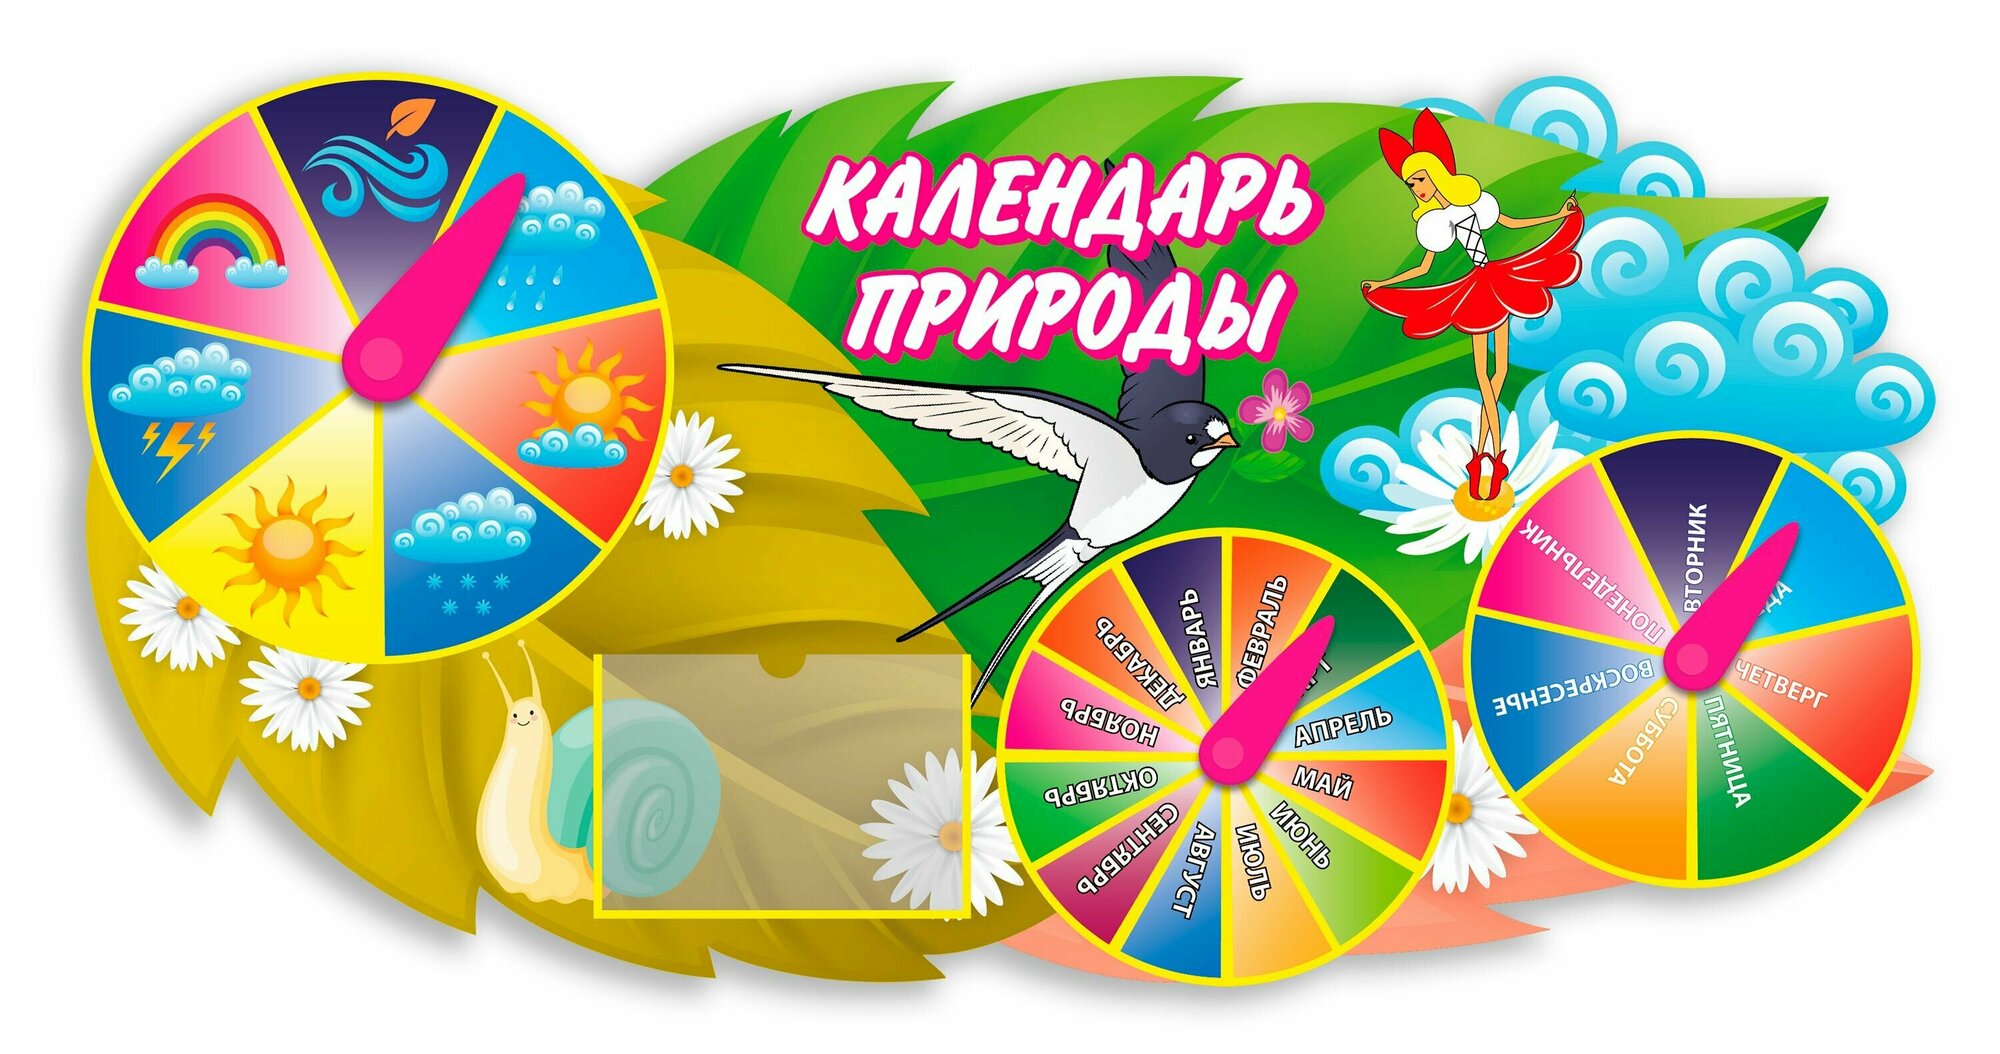 Информационный игровой стенд фигурный " Календарь природы" для детского сада, с карманом